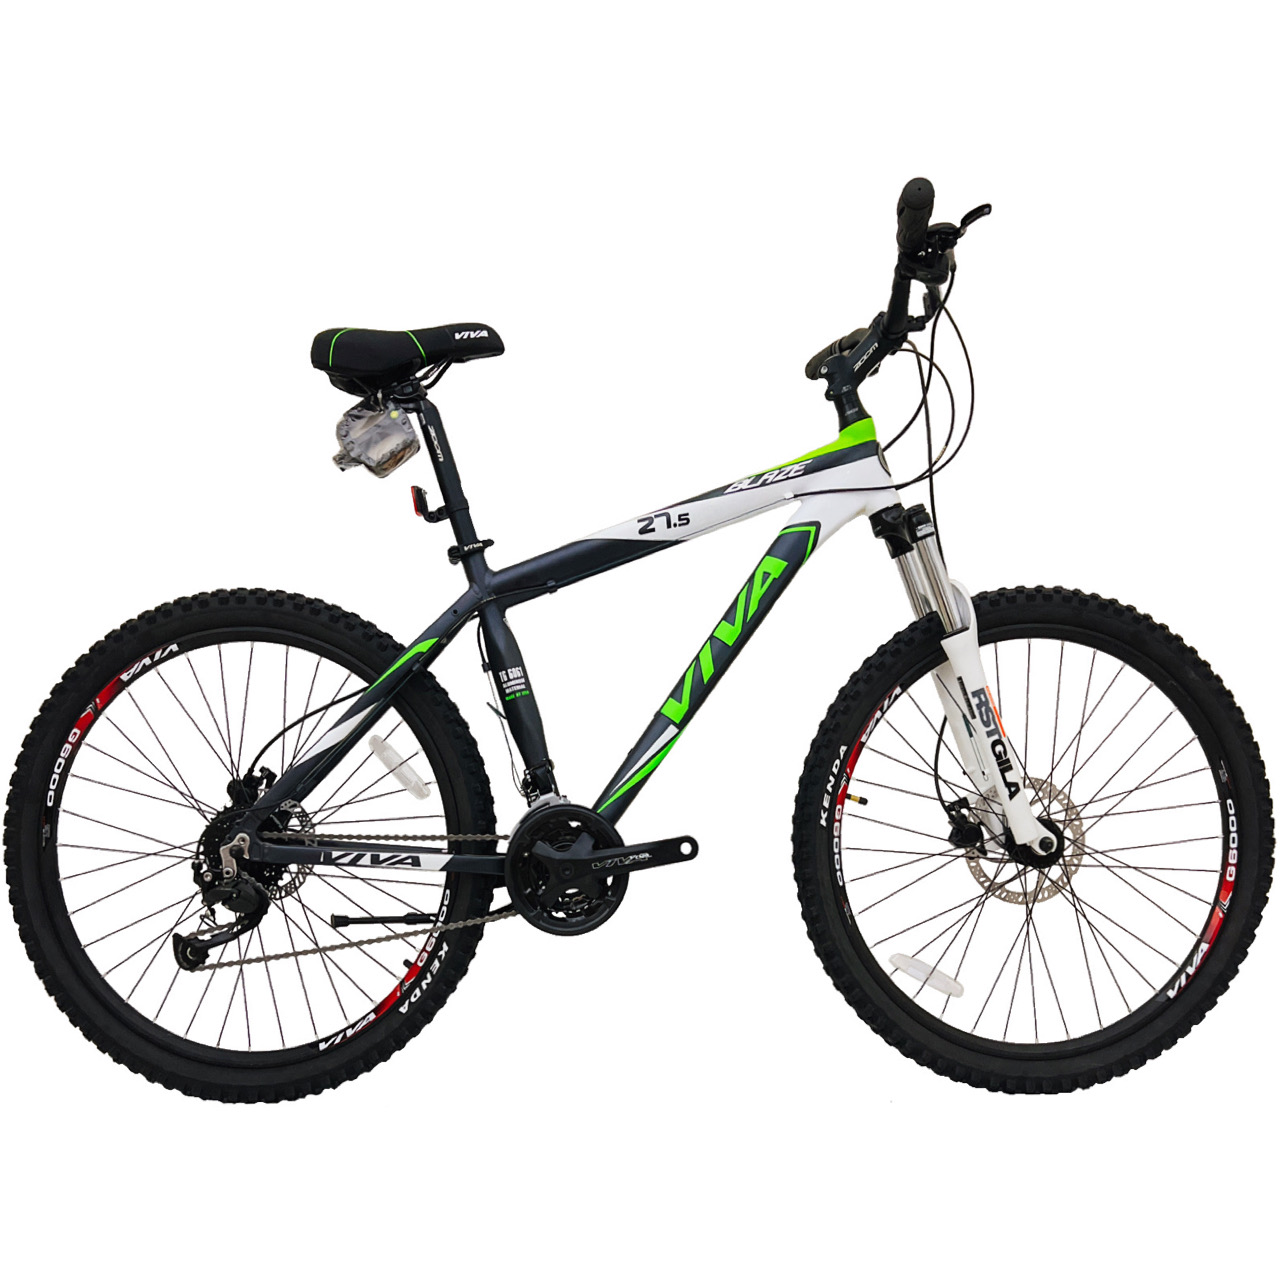 نکته خرید - قیمت روز دوچرخه کوهستان ویوا مدل BLAZE کد 27 سایز 27.5 خرید